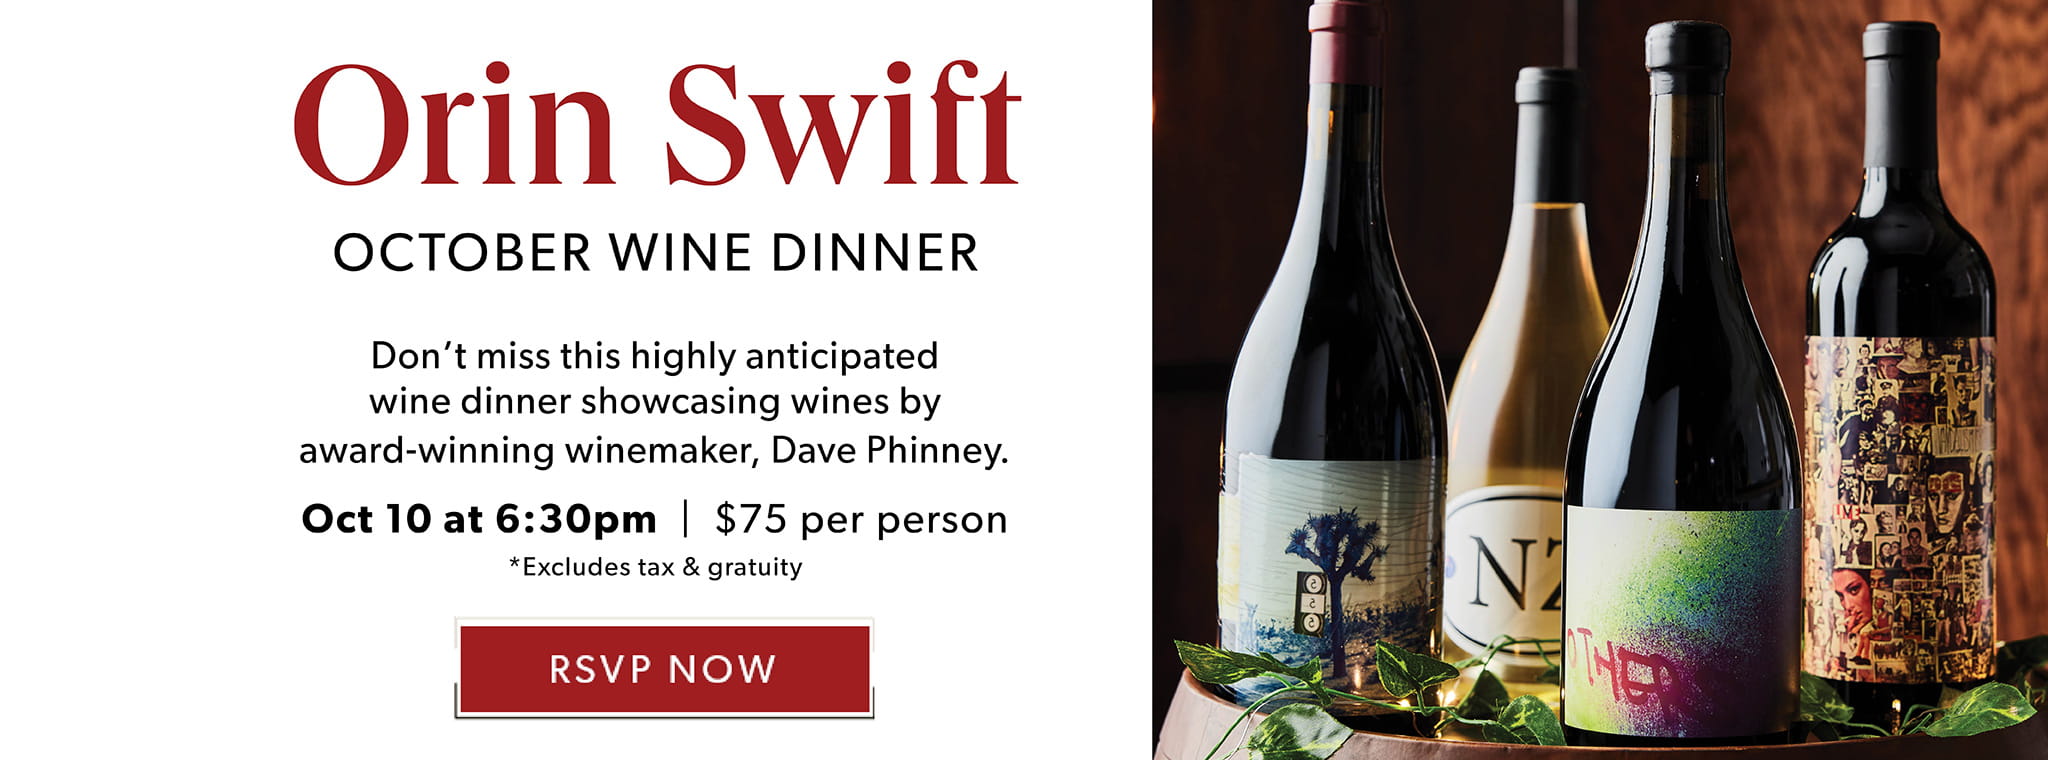 Orin Swift October Wine Dinner